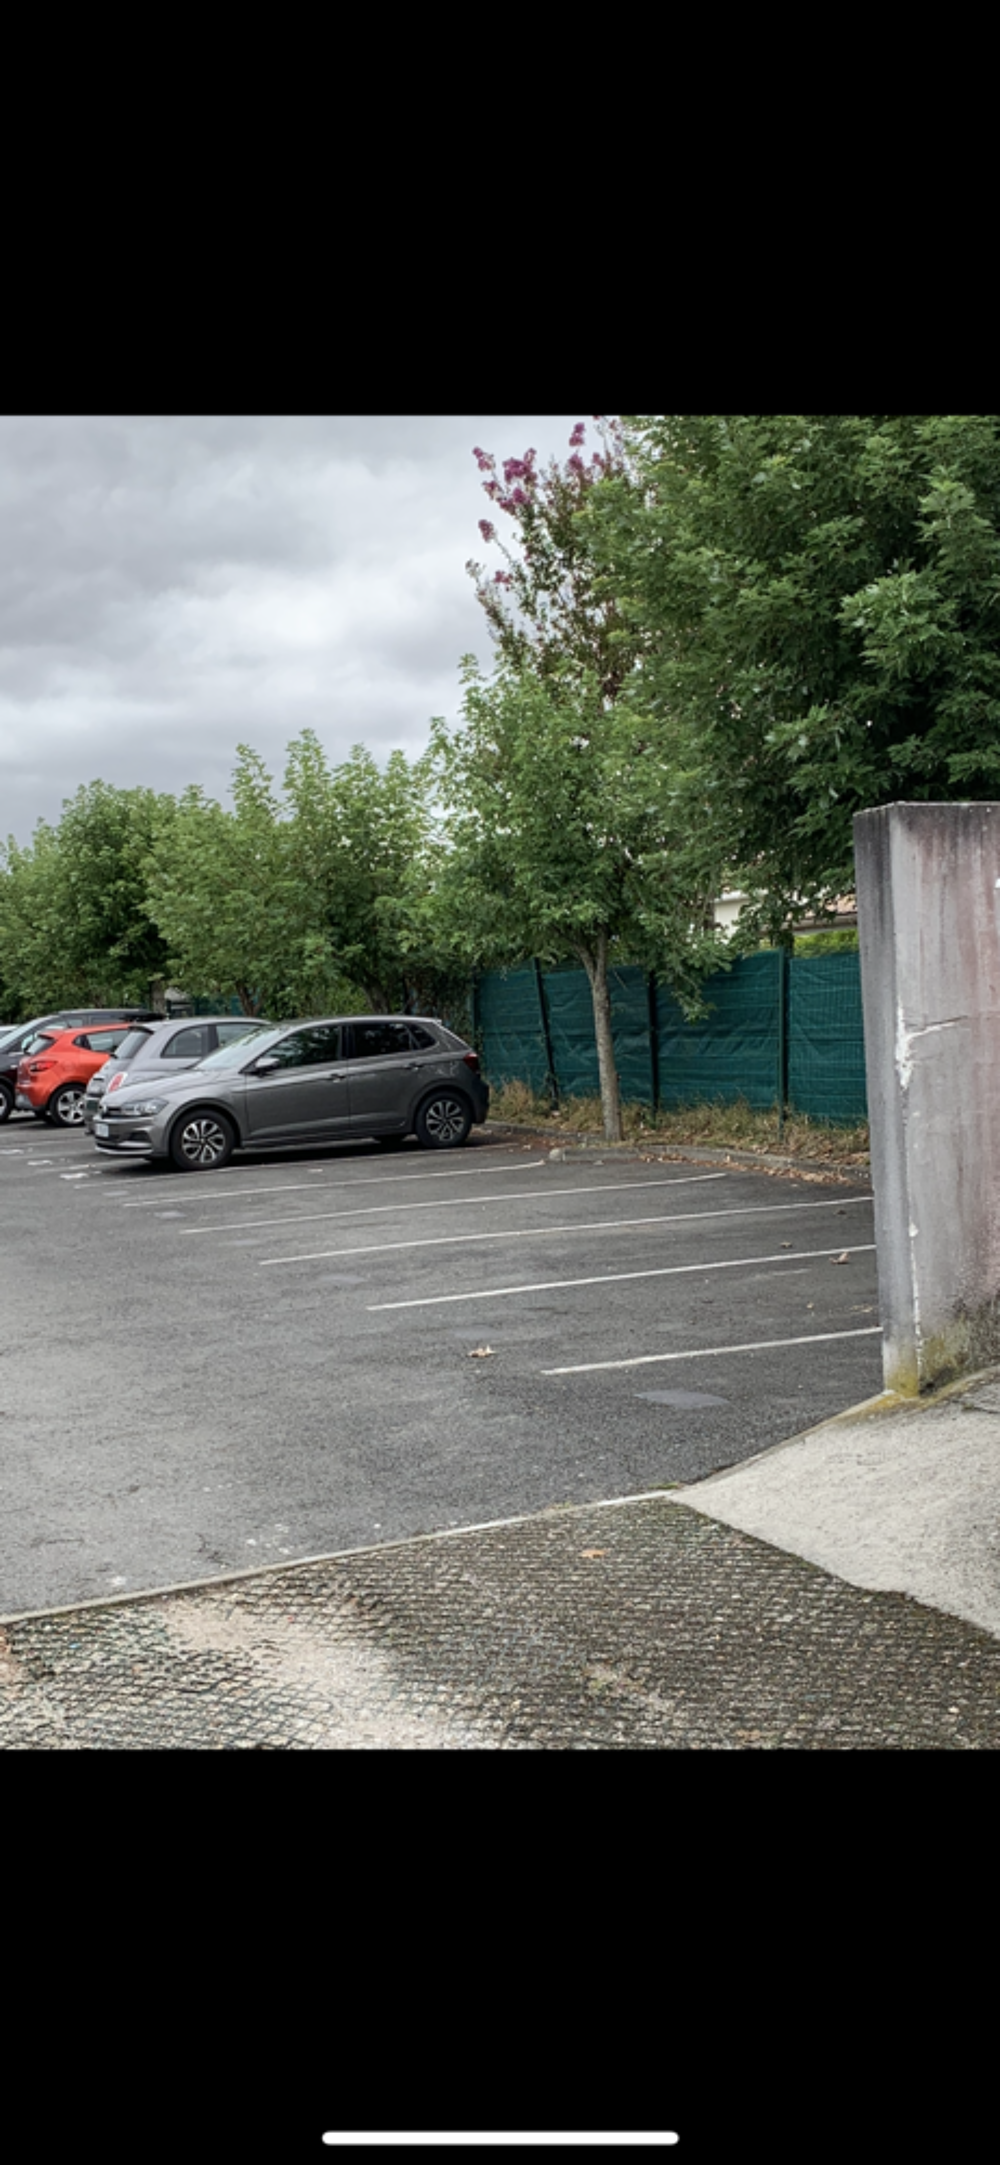 Location Parking/Garage parking a bordeaux dans residence sécurisée Bordeaux